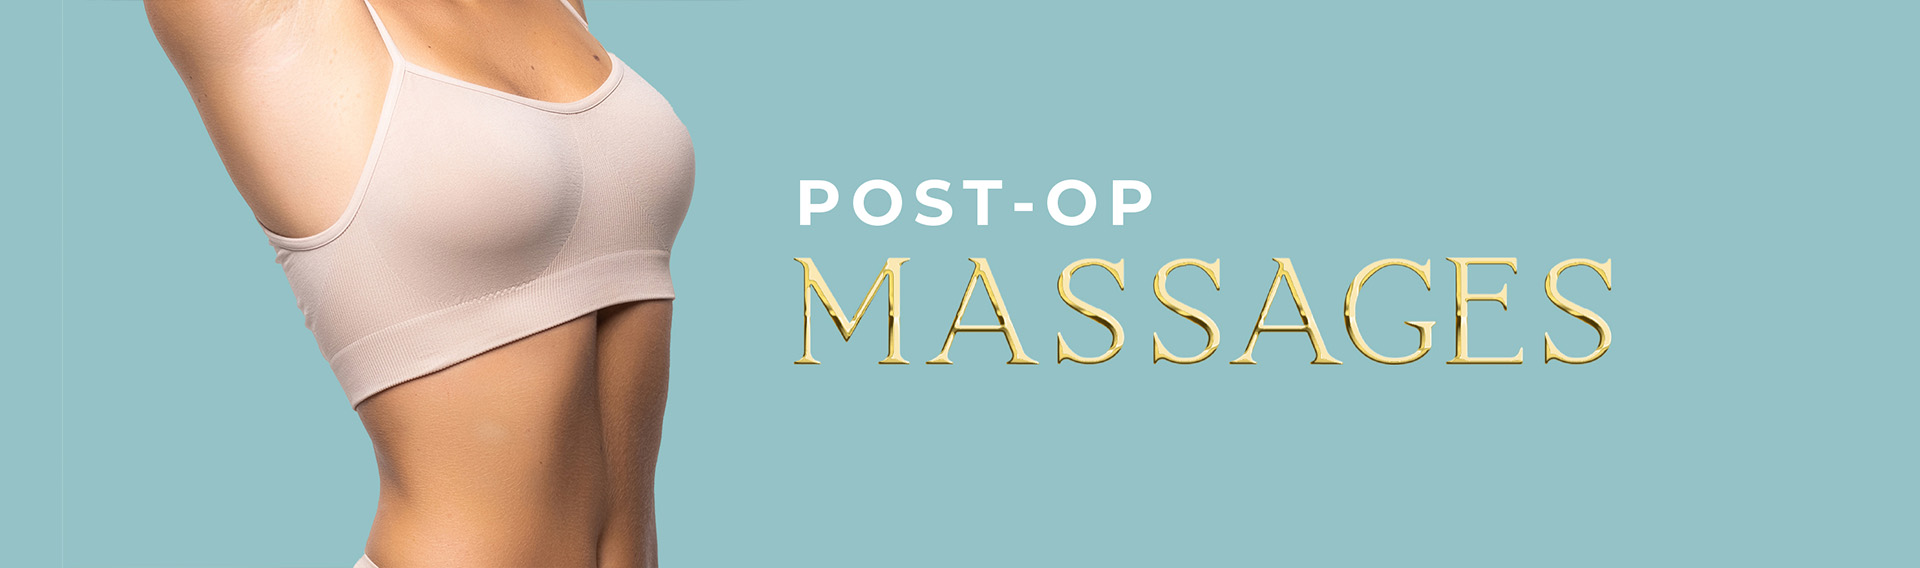 Sale Post-op Massages - Spa in Queens New York